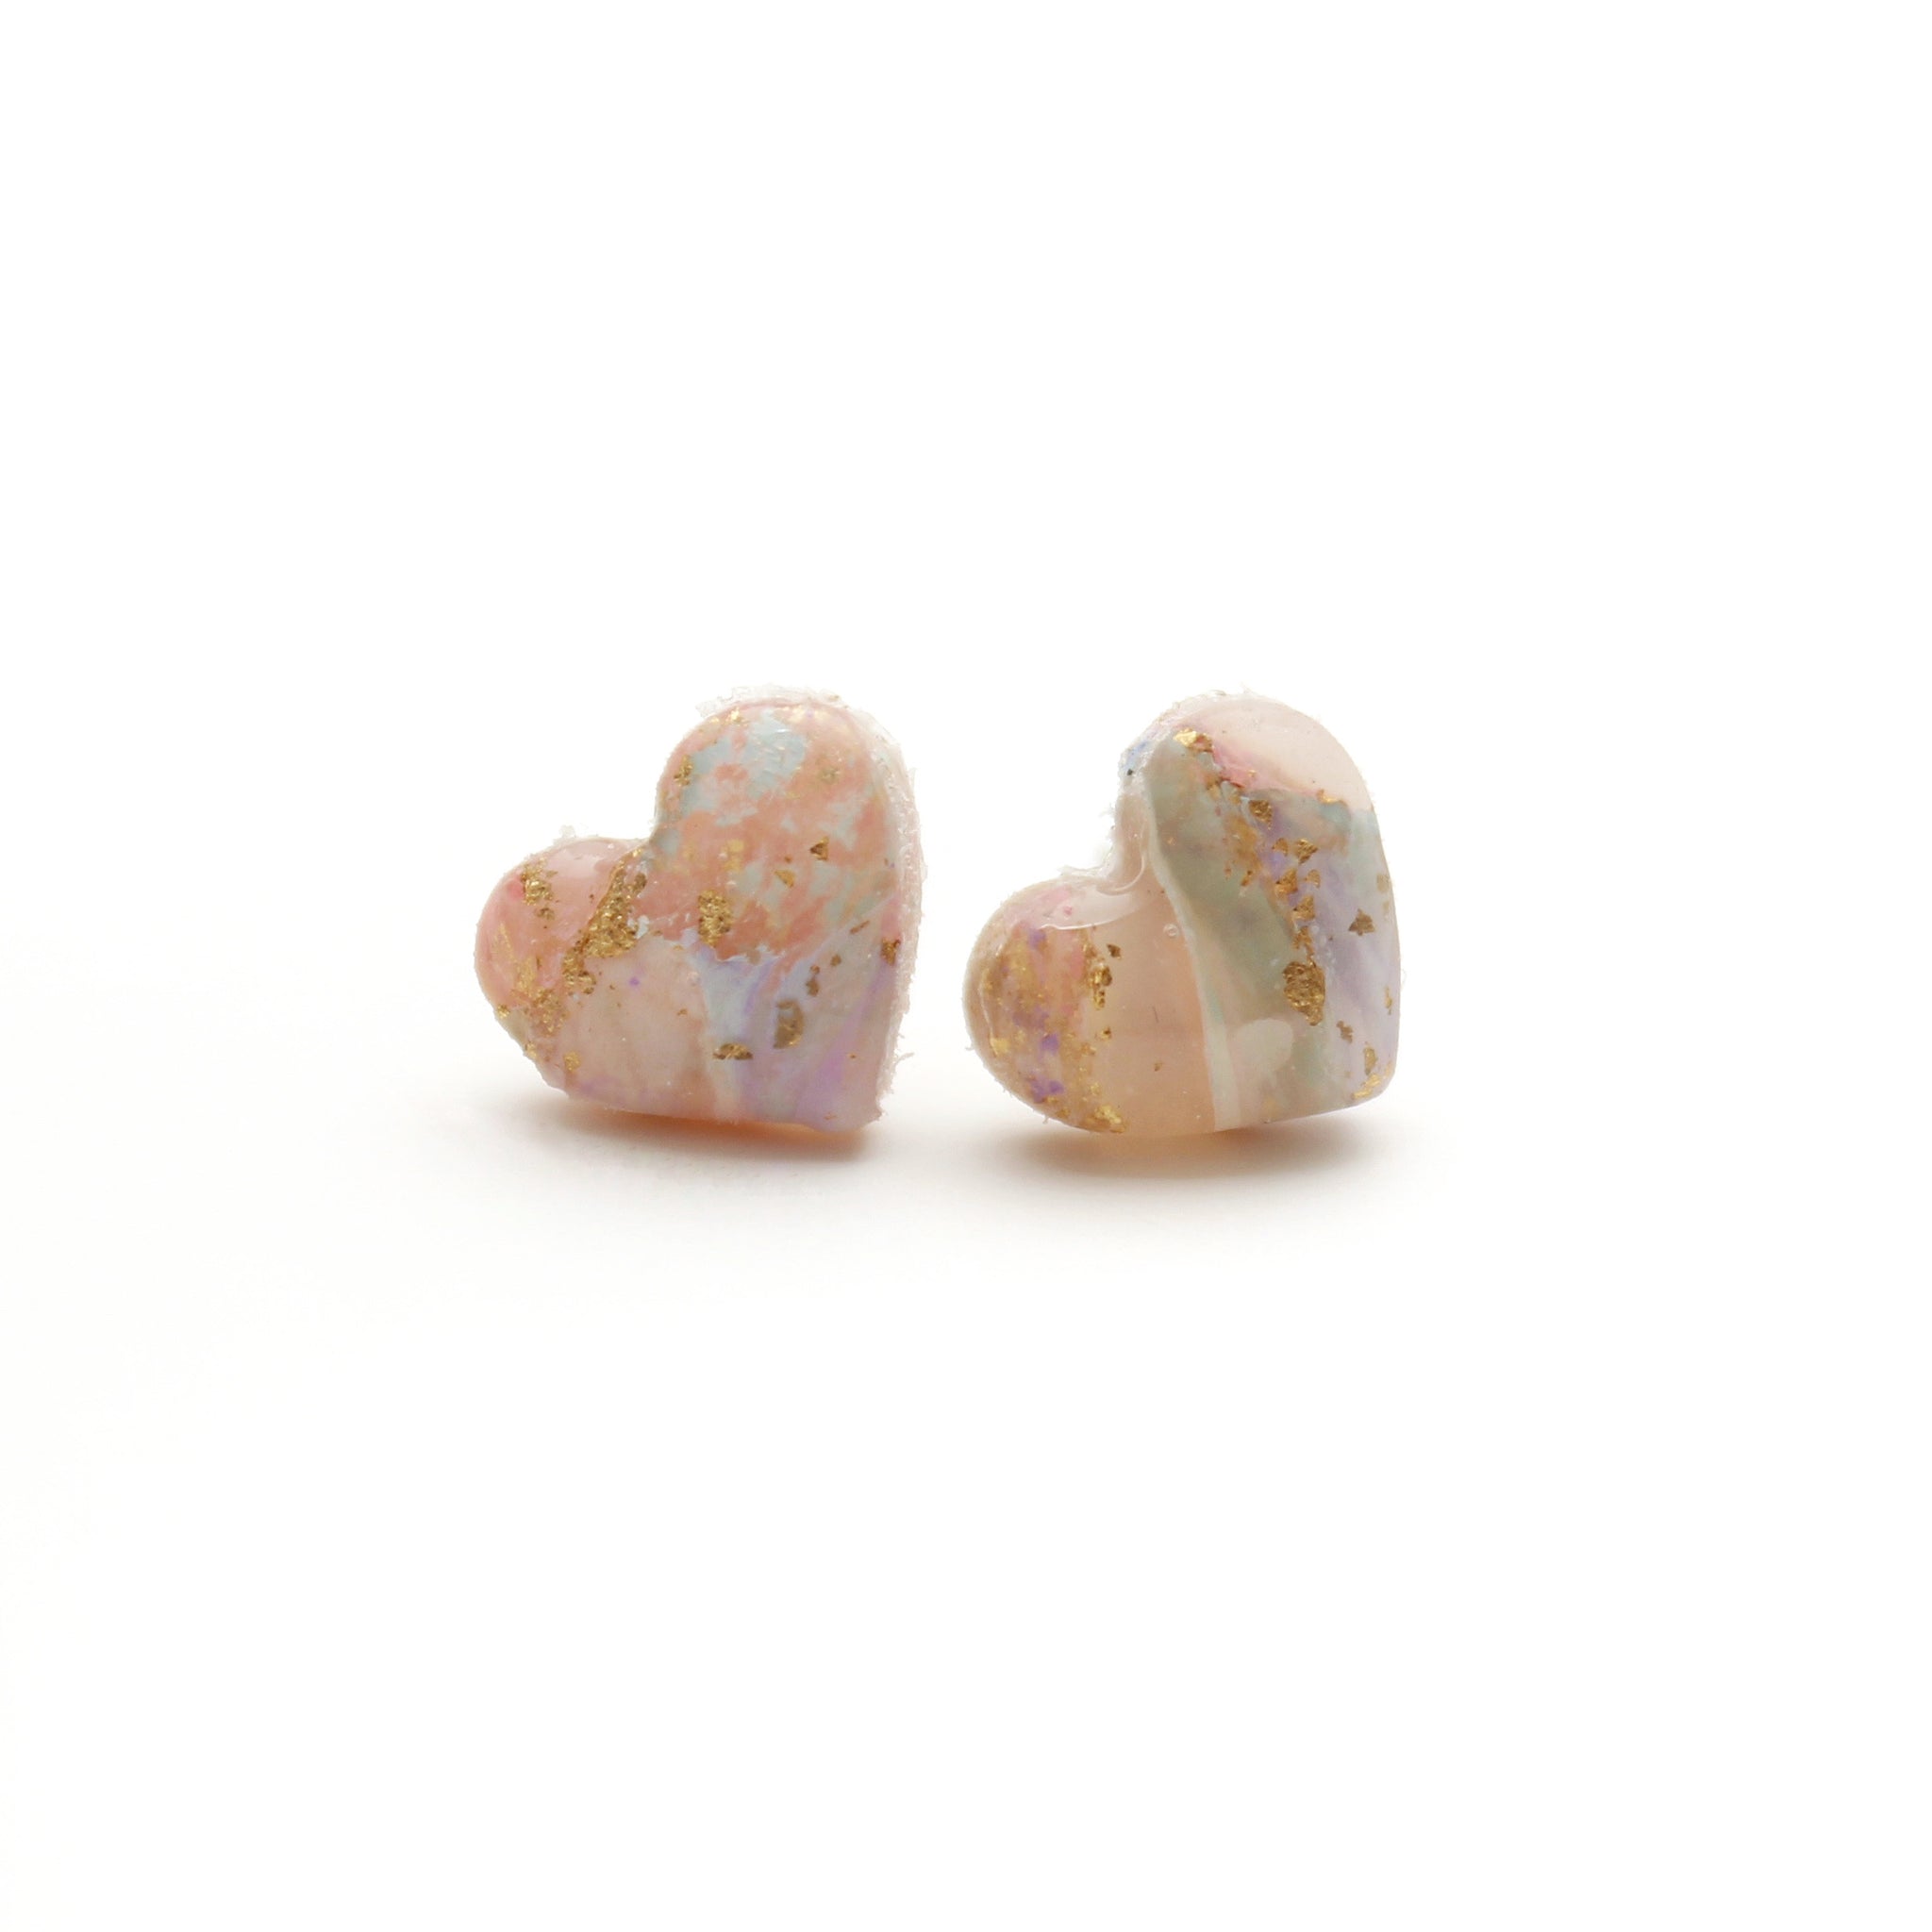 Cotton Candy Heart Stud Earrings